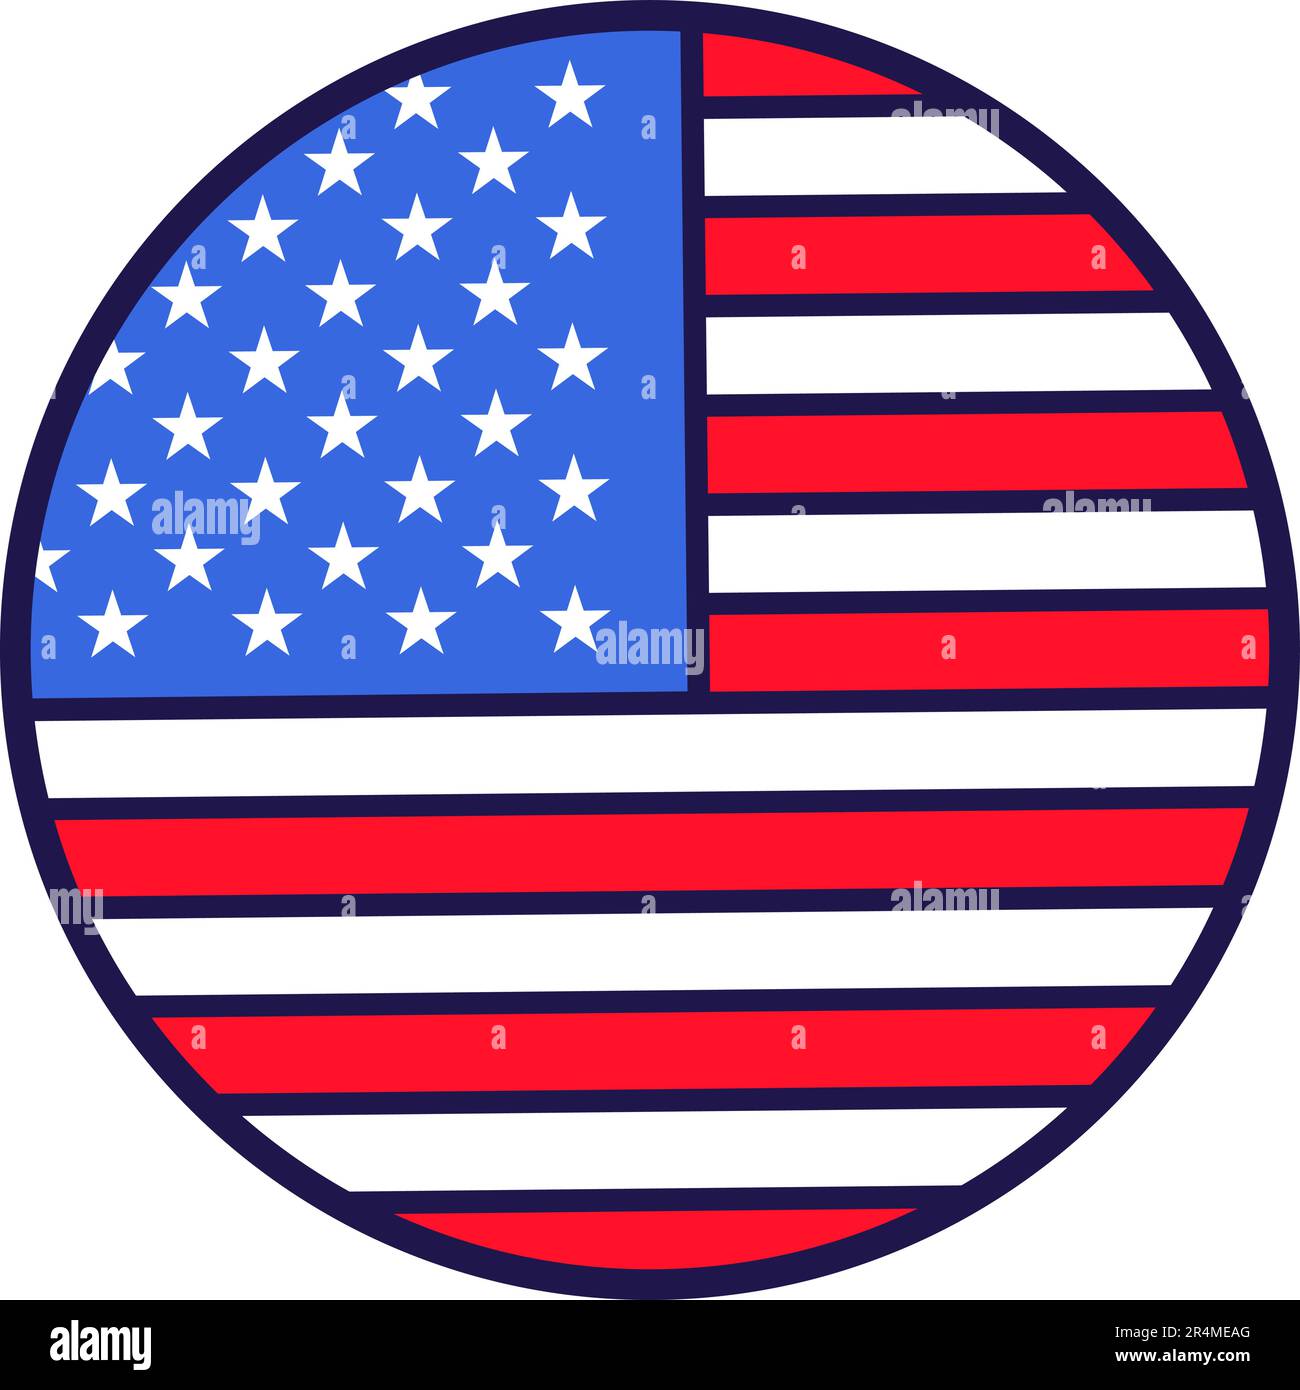 Decalcomania adesiva rotonda nei colori della bandiera americana. Elemento  festivo, attributi del 4th luglio American Independence Day. Icona vettore  cartoon in col nazionale Immagine e Vettoriale - Alamy